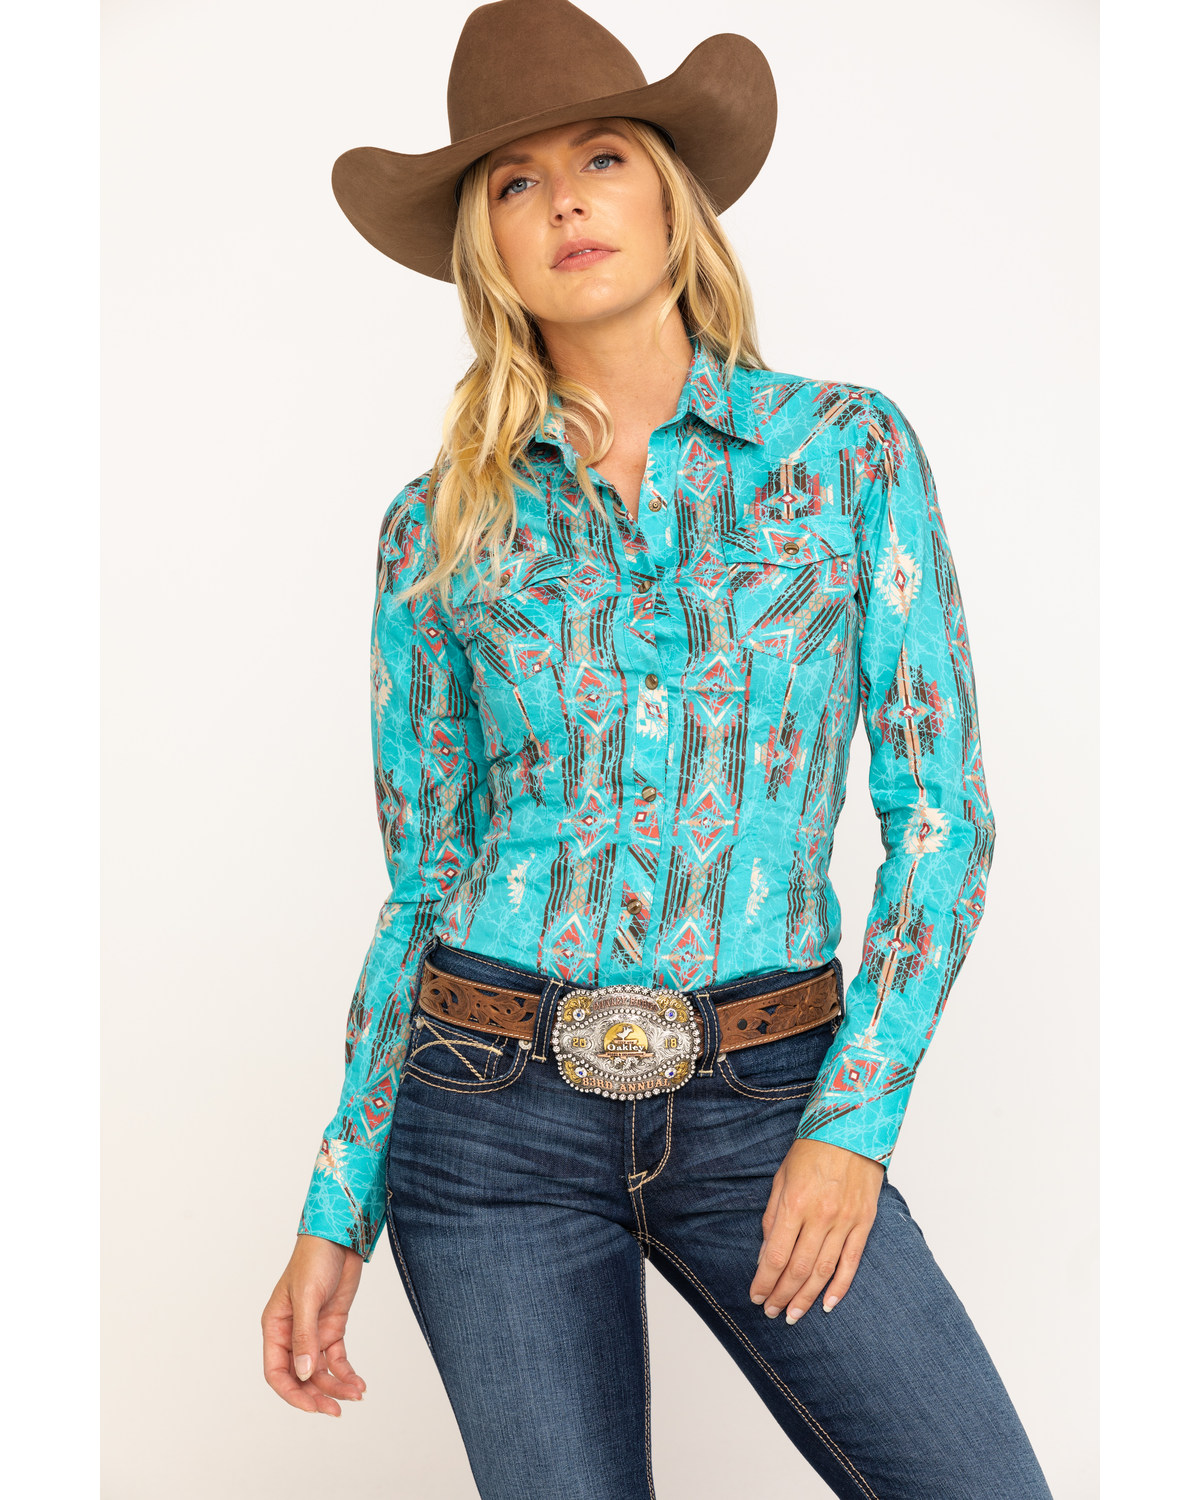 cowboy cowgirl attire